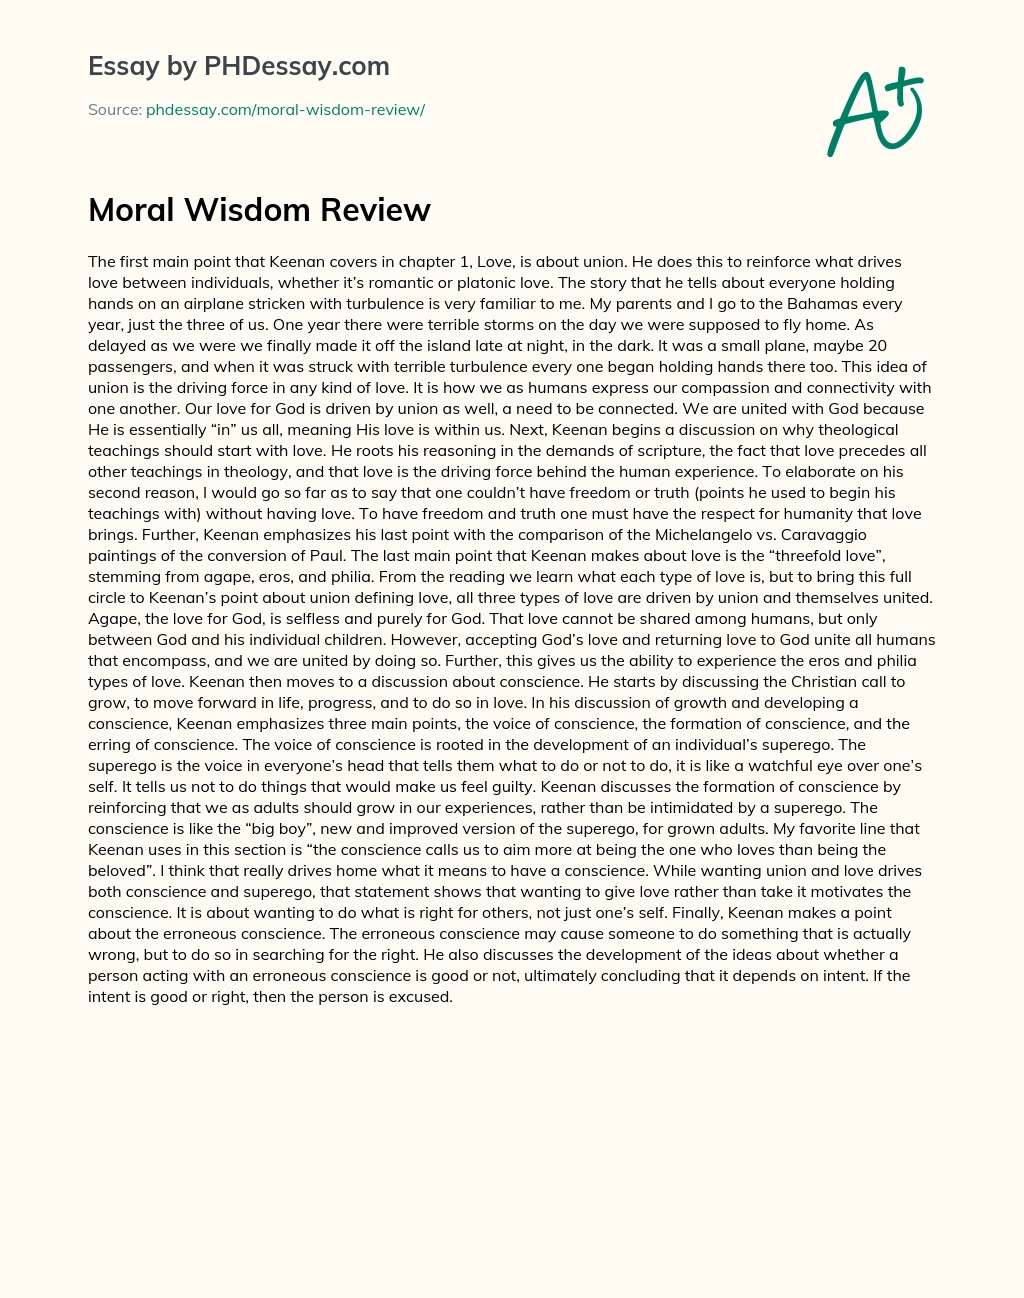 Moral Wisdom Review essay